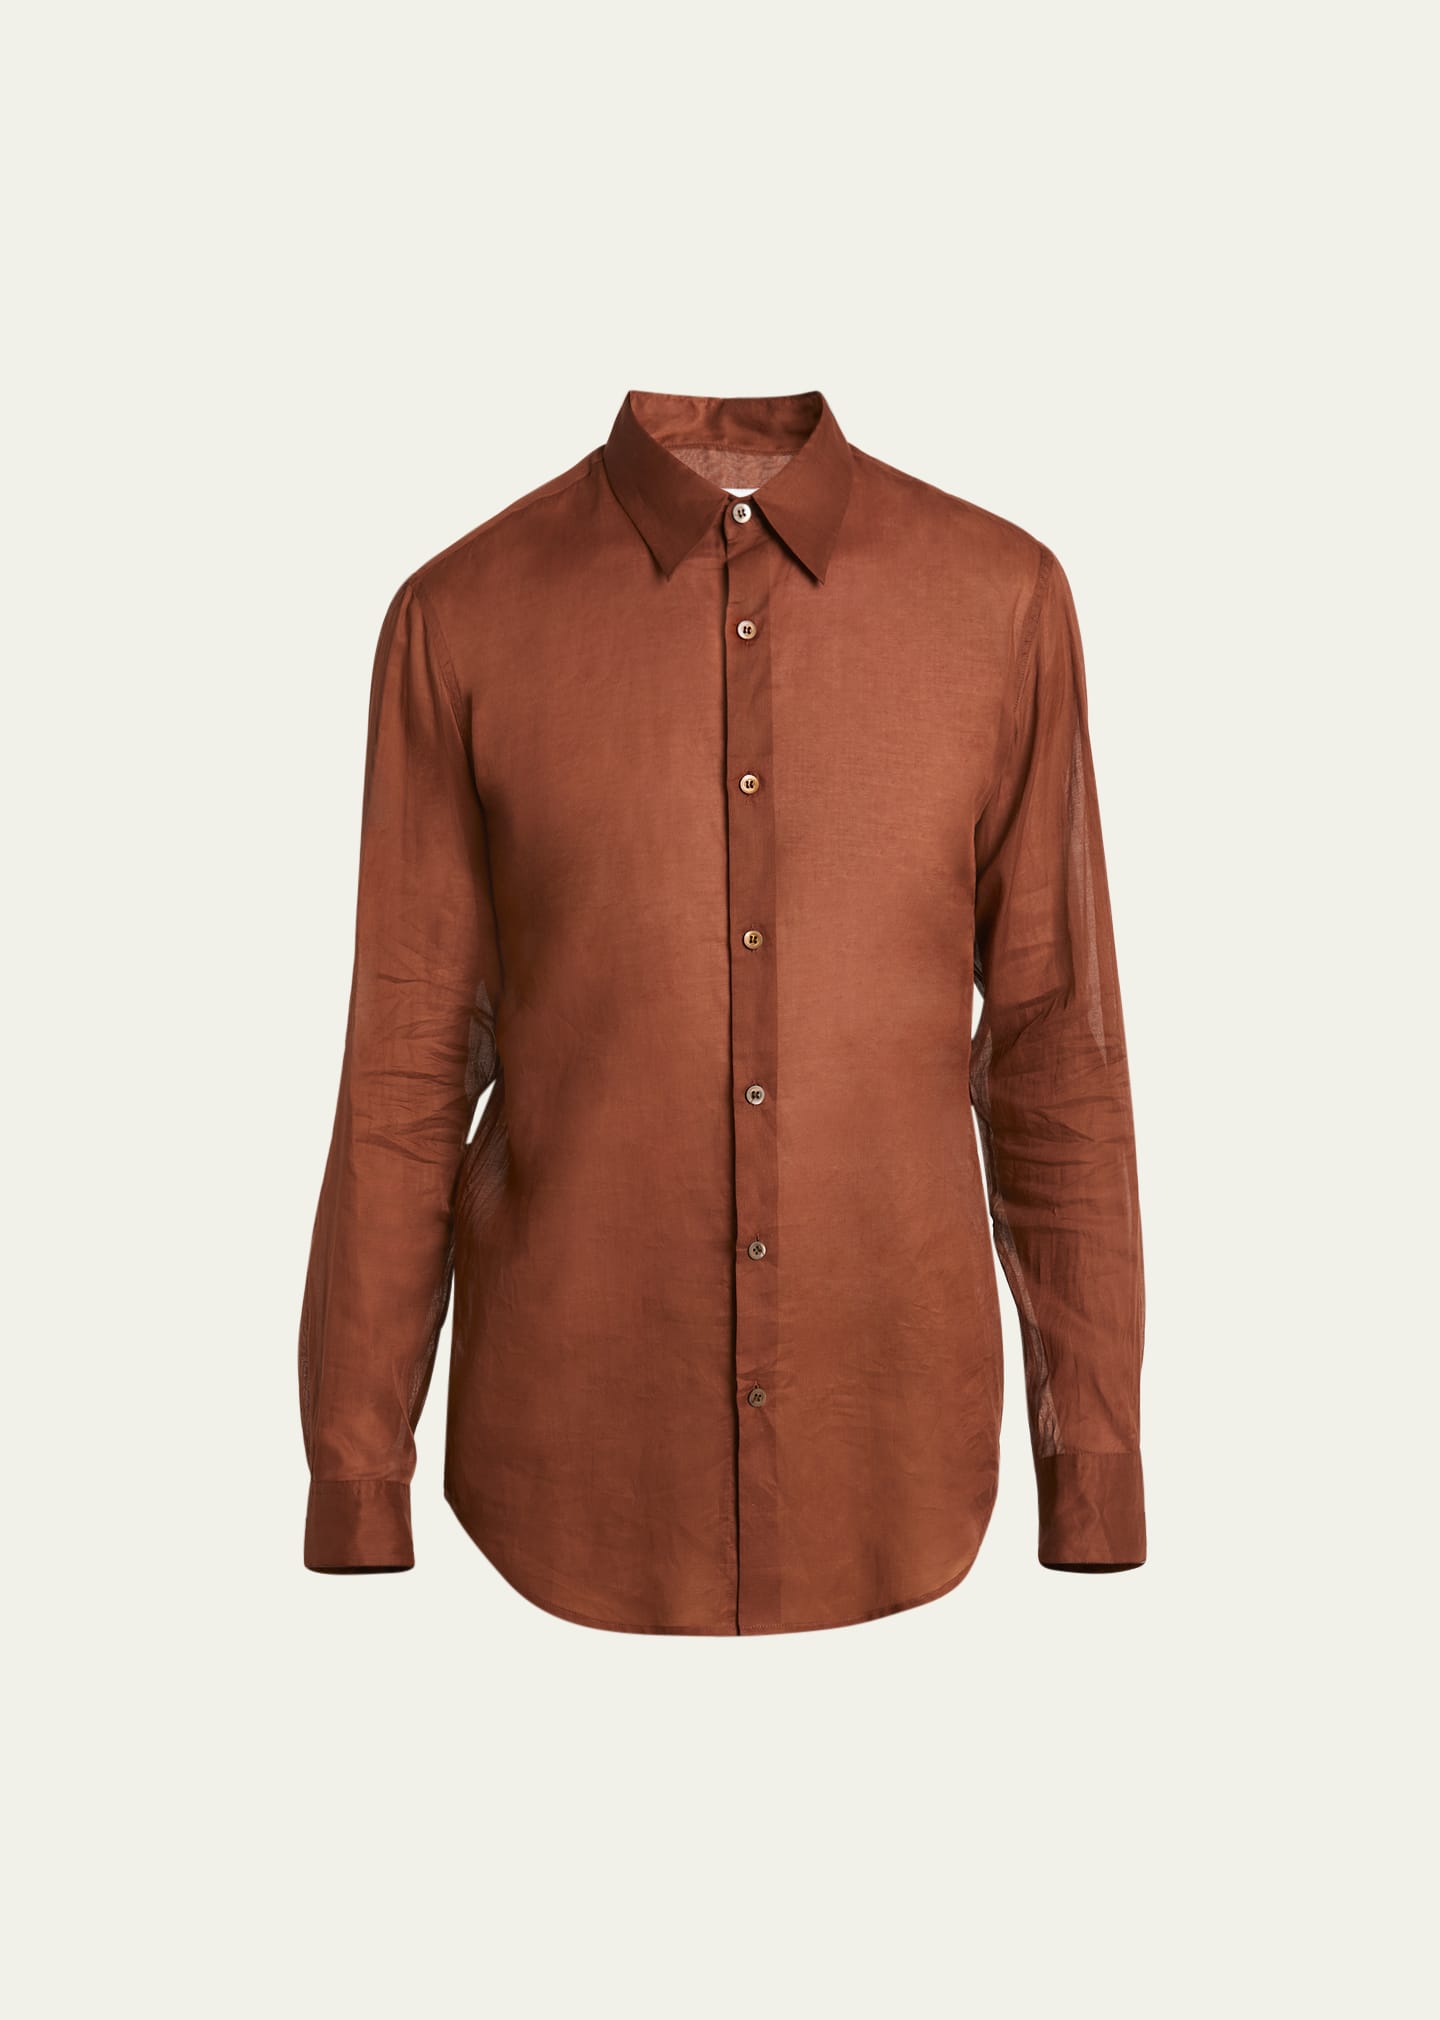 Dries Van Noten Men's Lightweight Cotton Voile Dress Shirt In 701 - Rust